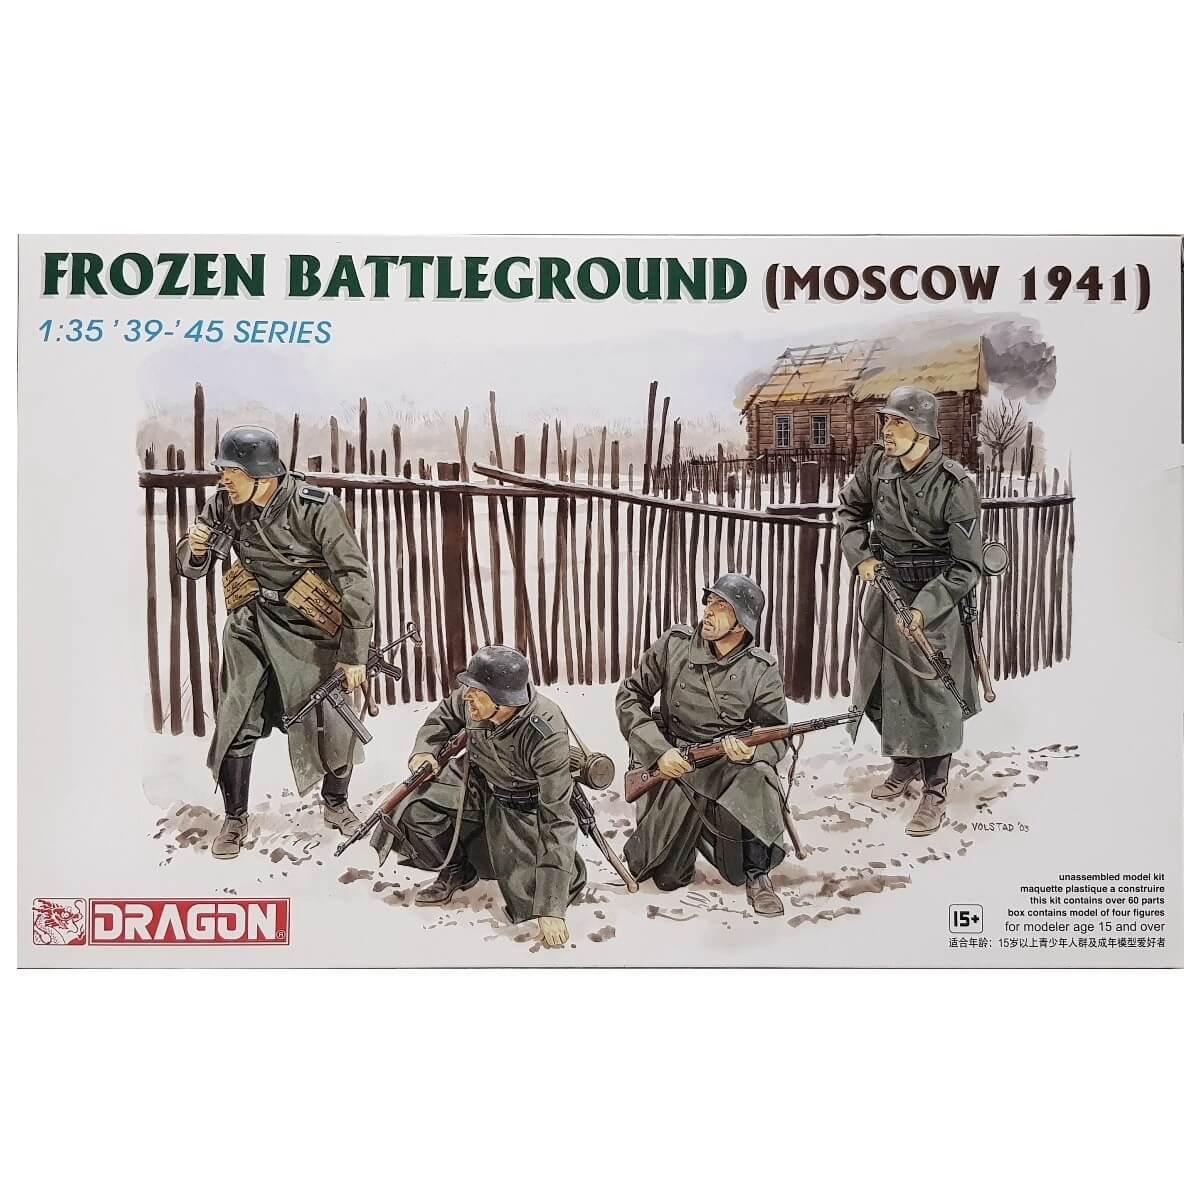 1:35 Frozen Battleground - Moscow 1941 - DRAGON